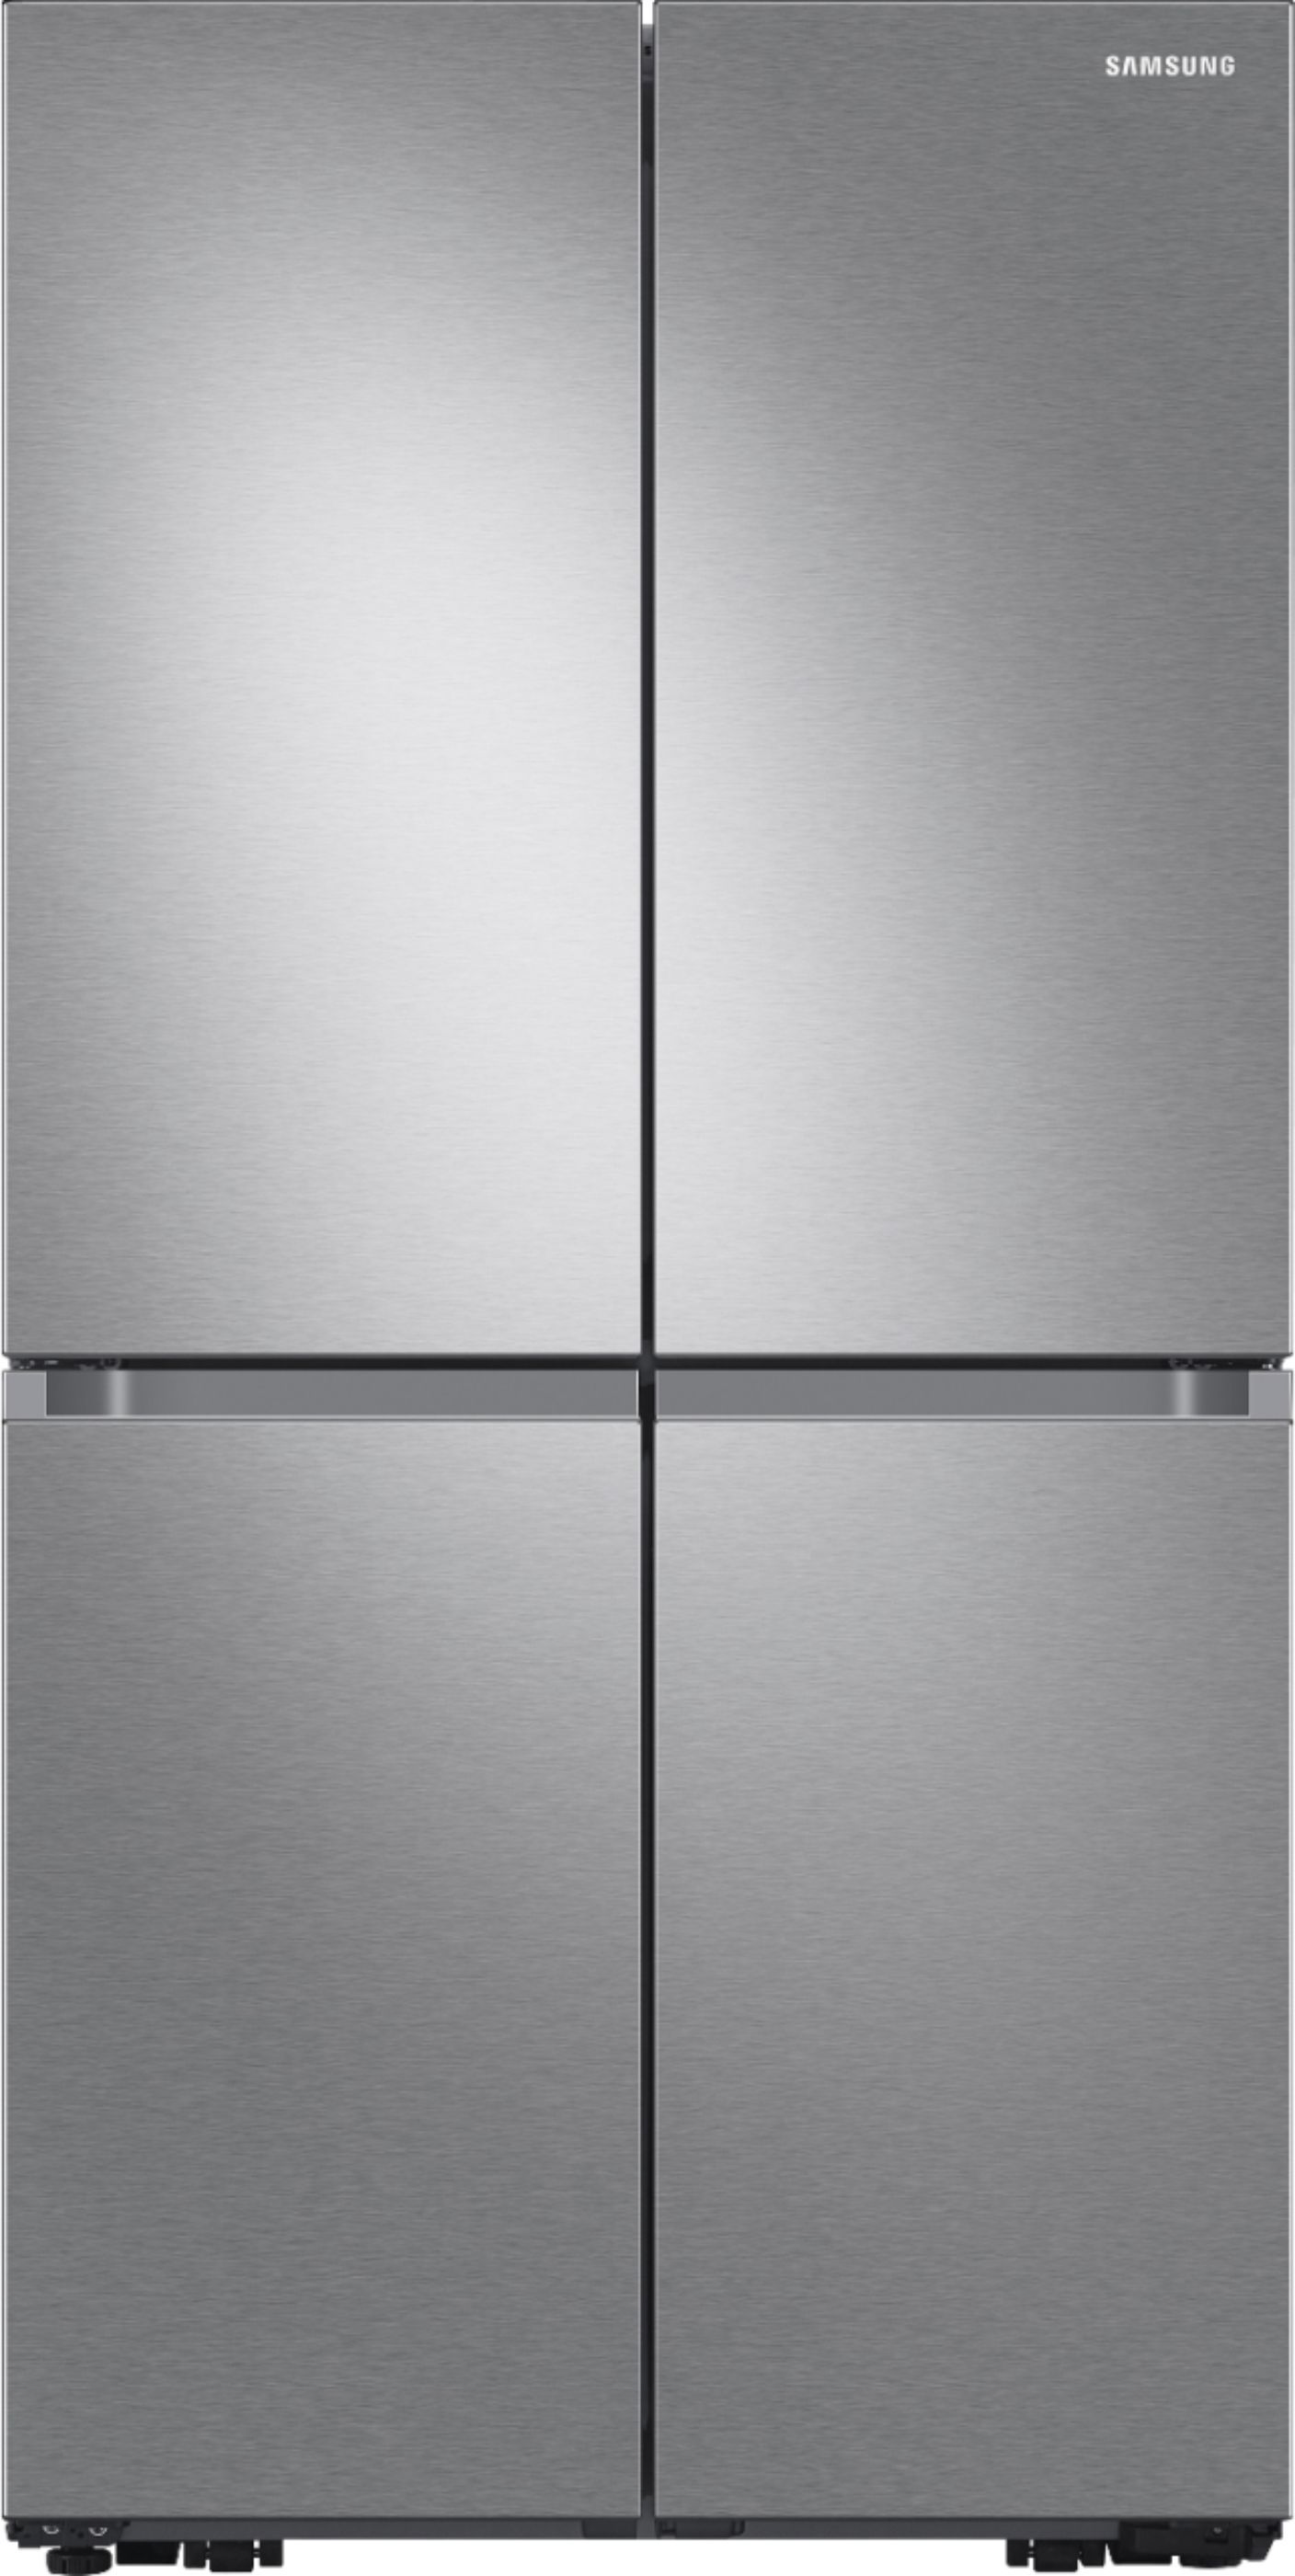 Samsung 29 cu. ft. 4-Door Flex French Door Refrigerator with WiFi, Beverage Center and Dual Ice M... | Best Buy U.S.